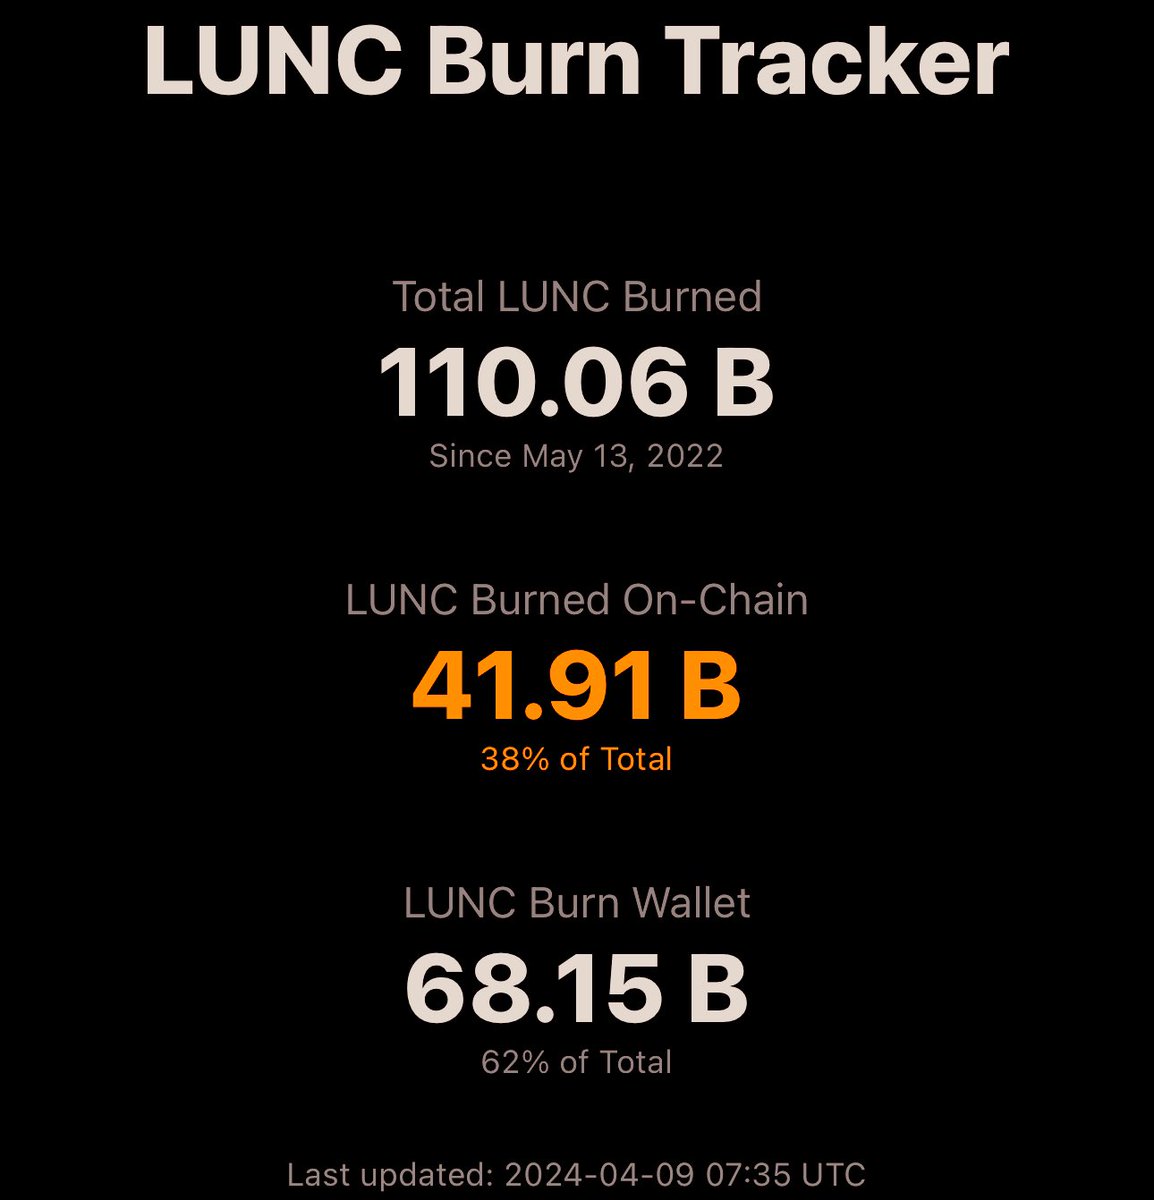 BREAKING NEWS #LUNC Burn update . Over 110Billion $LUNC SO FAR